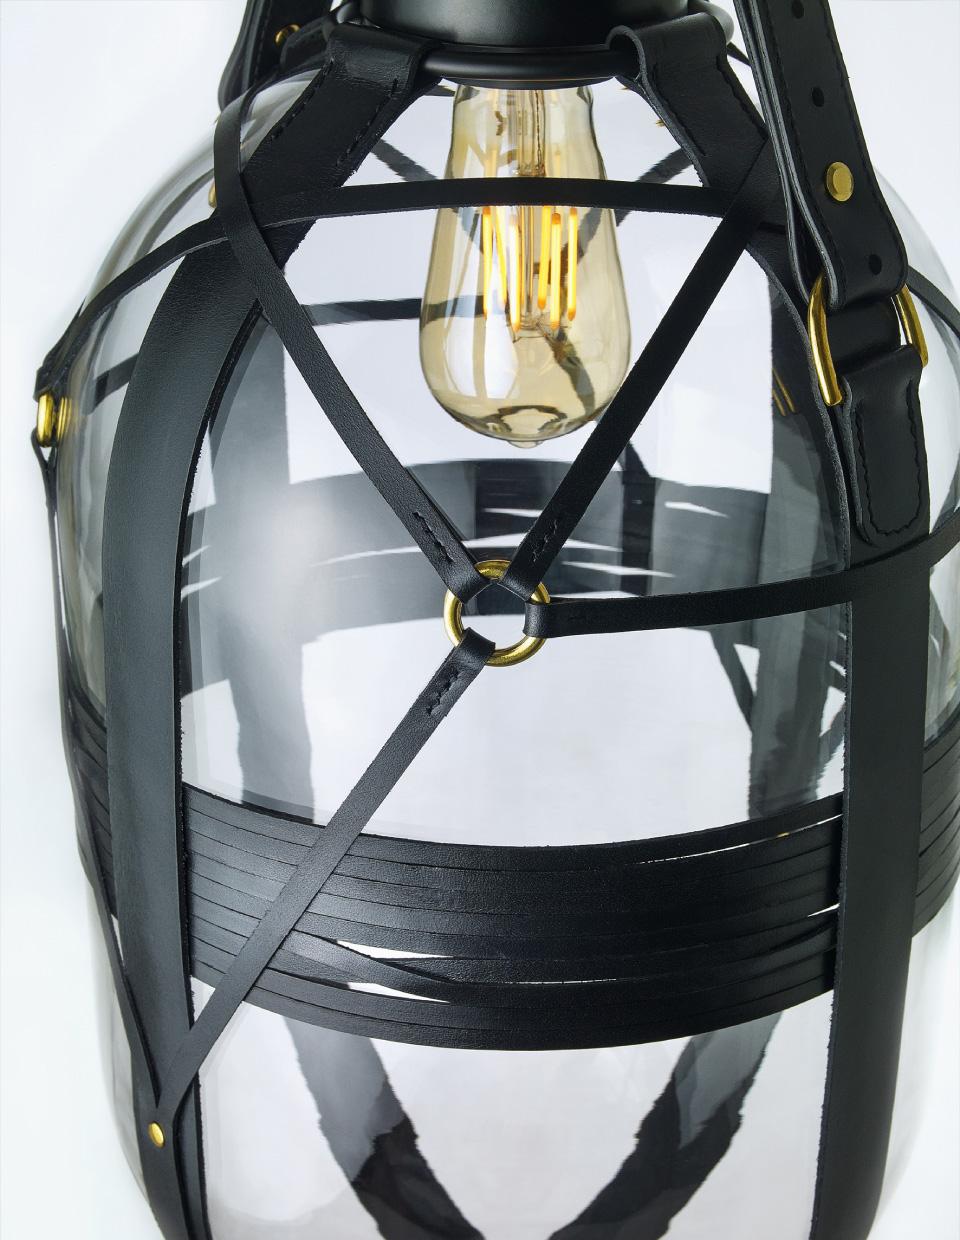 Modern Clear / Black Glass Pendant, Tied-Up Romance by Kateřina Handlová for Bomma